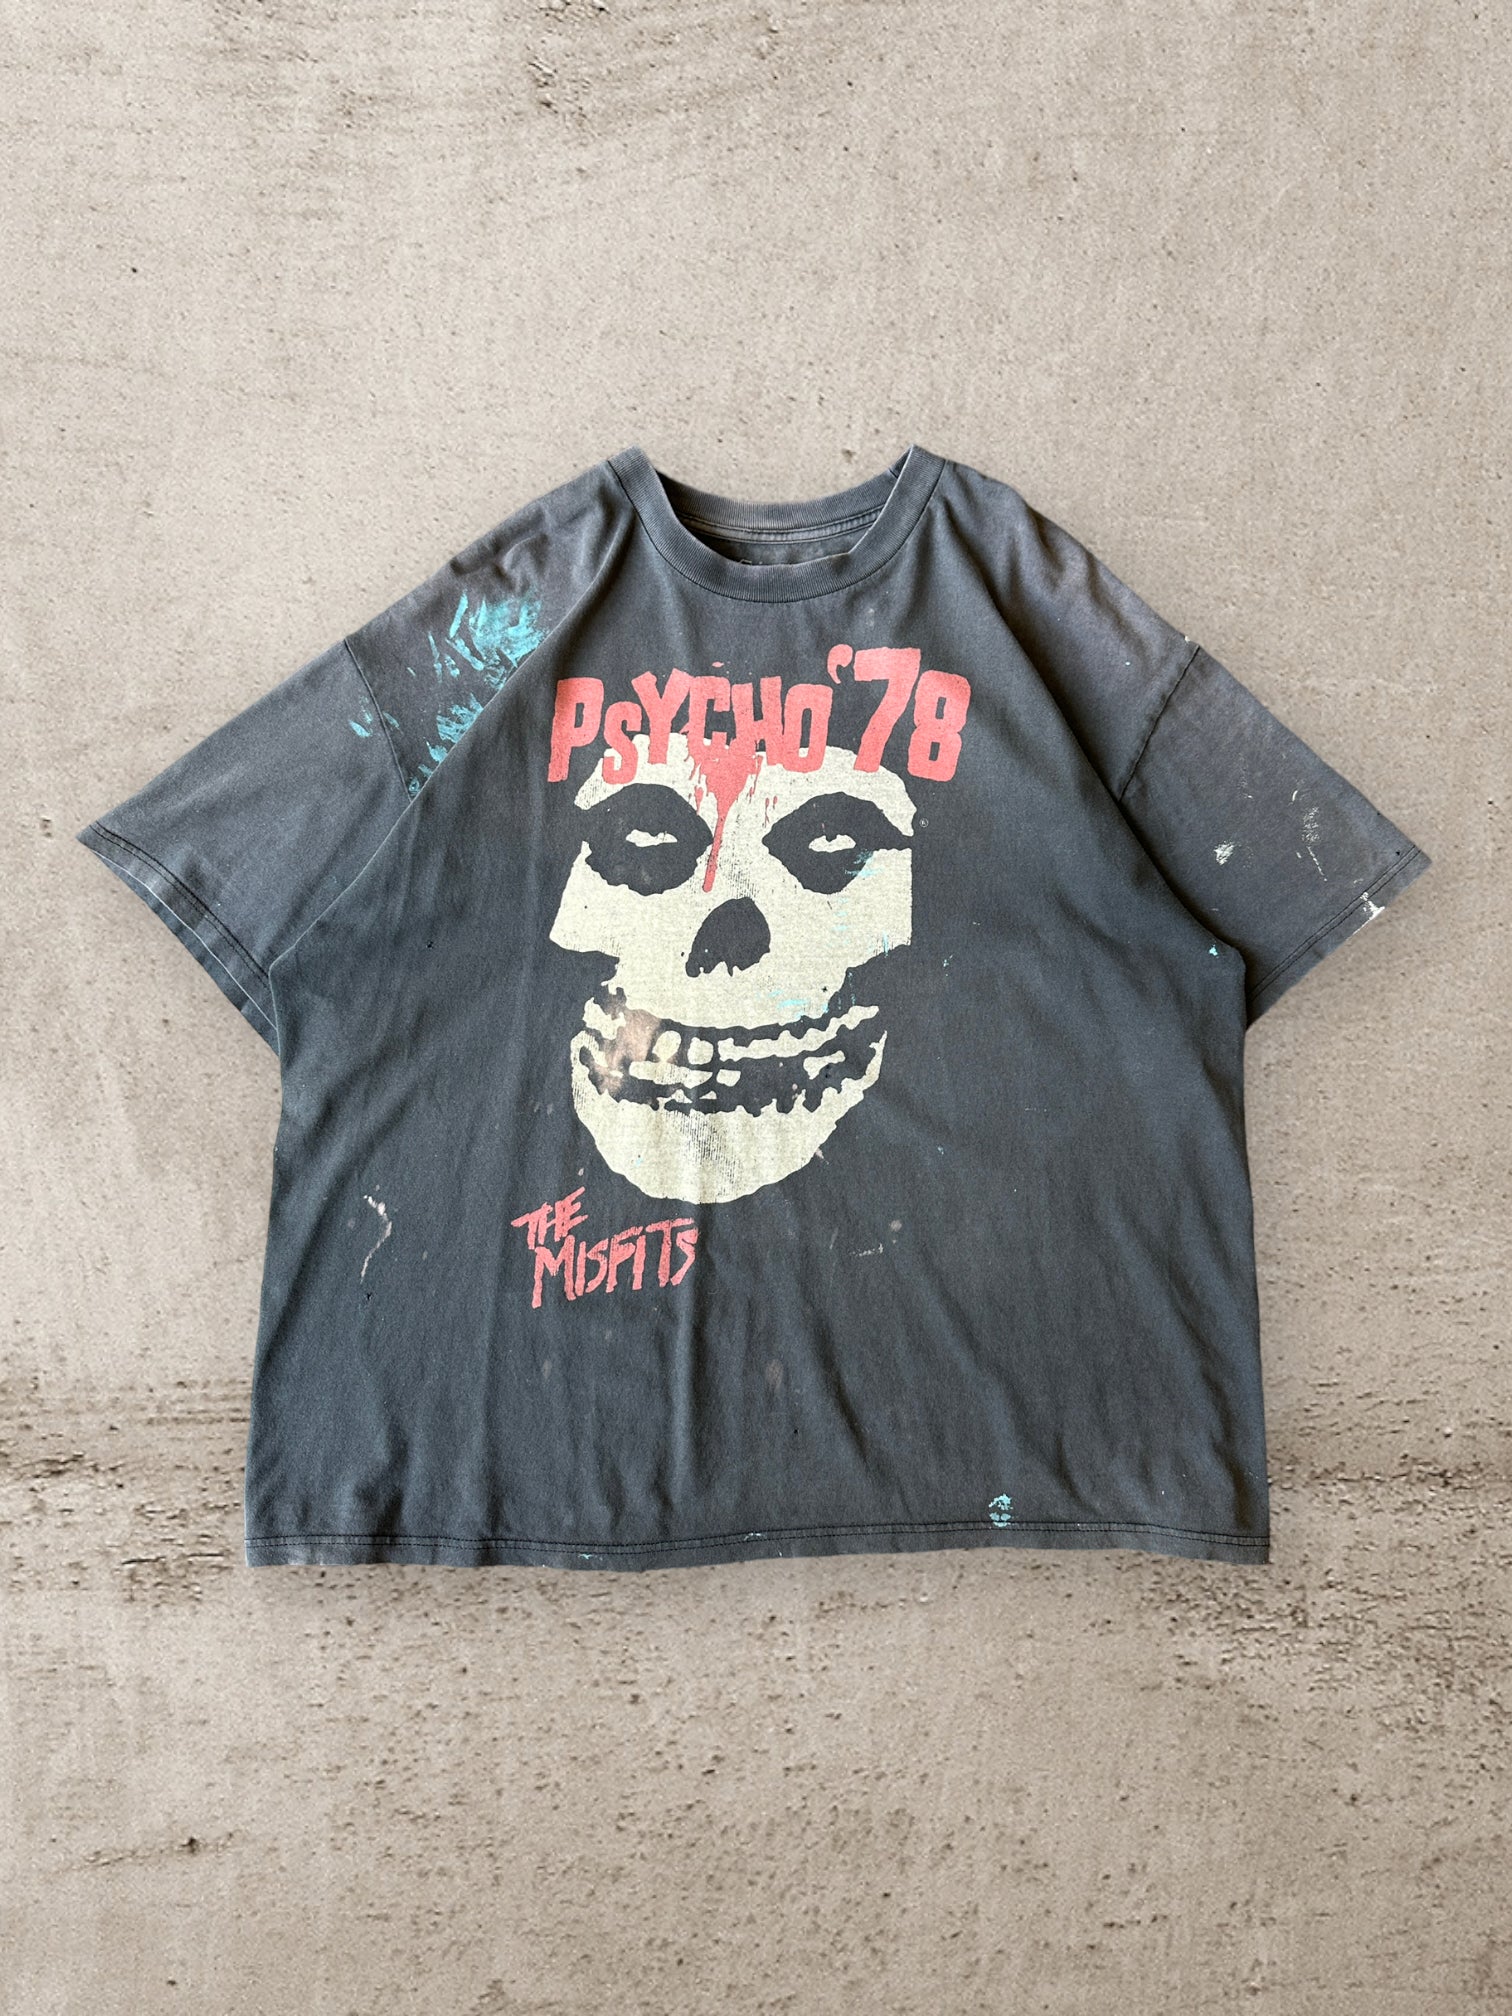 00s Misfits Psycho 78 Distressed T-Shirt - XXL